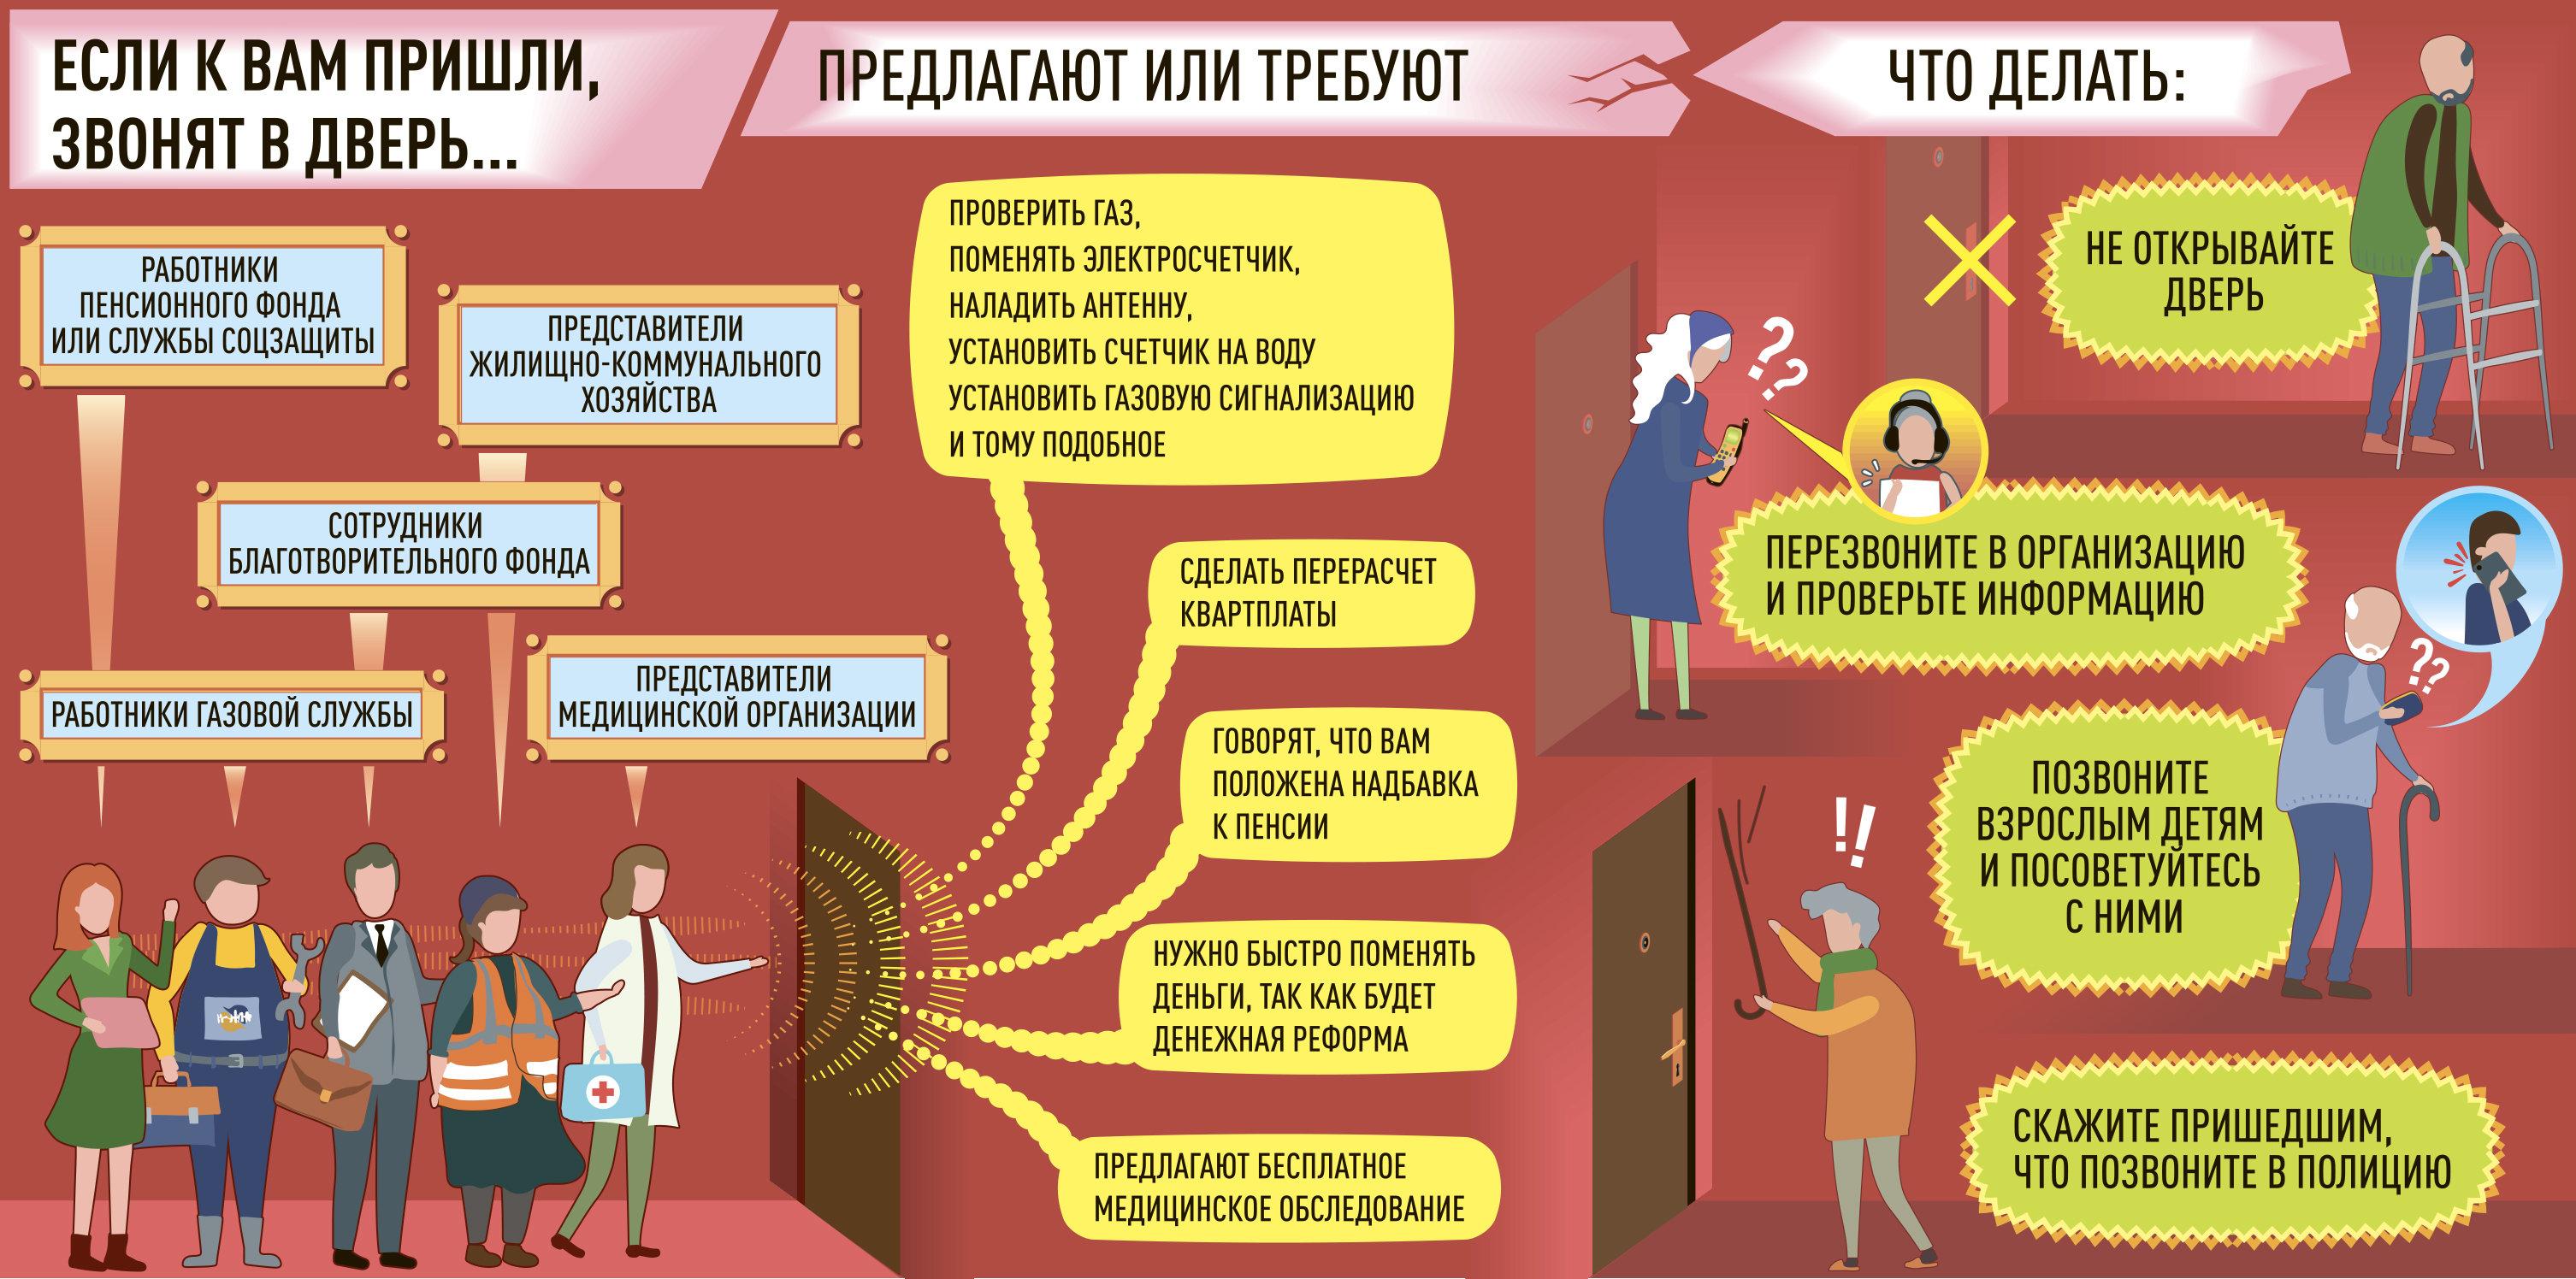 Стали известны самые популярные схемы мошенничества в условиях пандемии / news2.ru